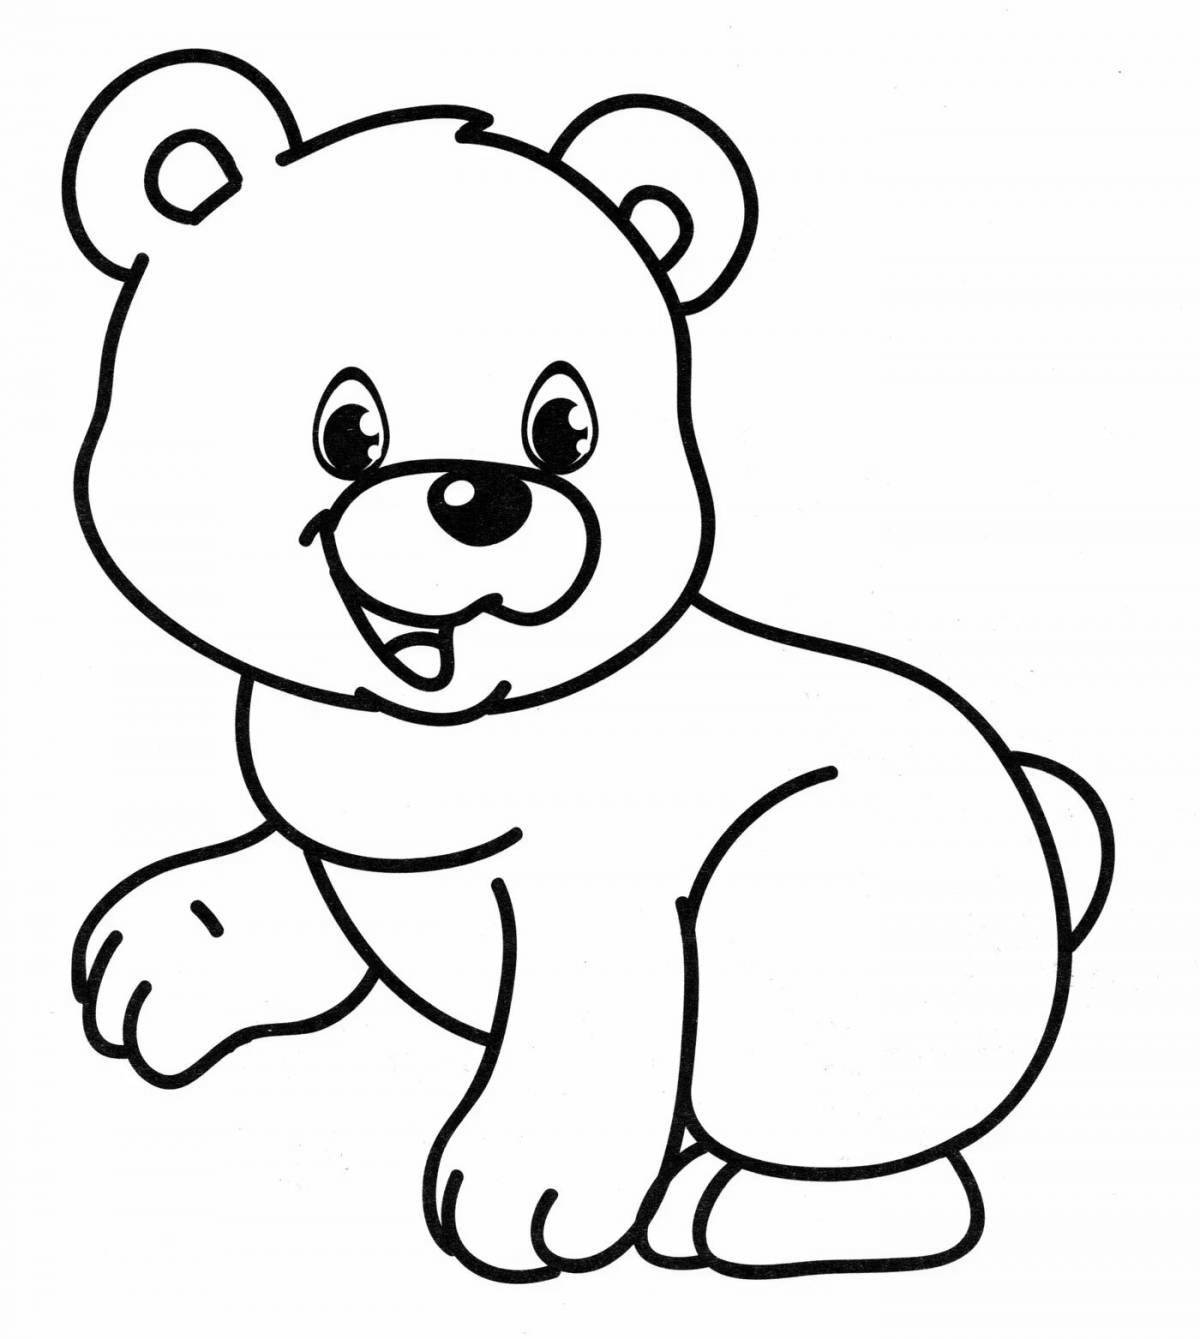 Dancing teddy bear coloring book